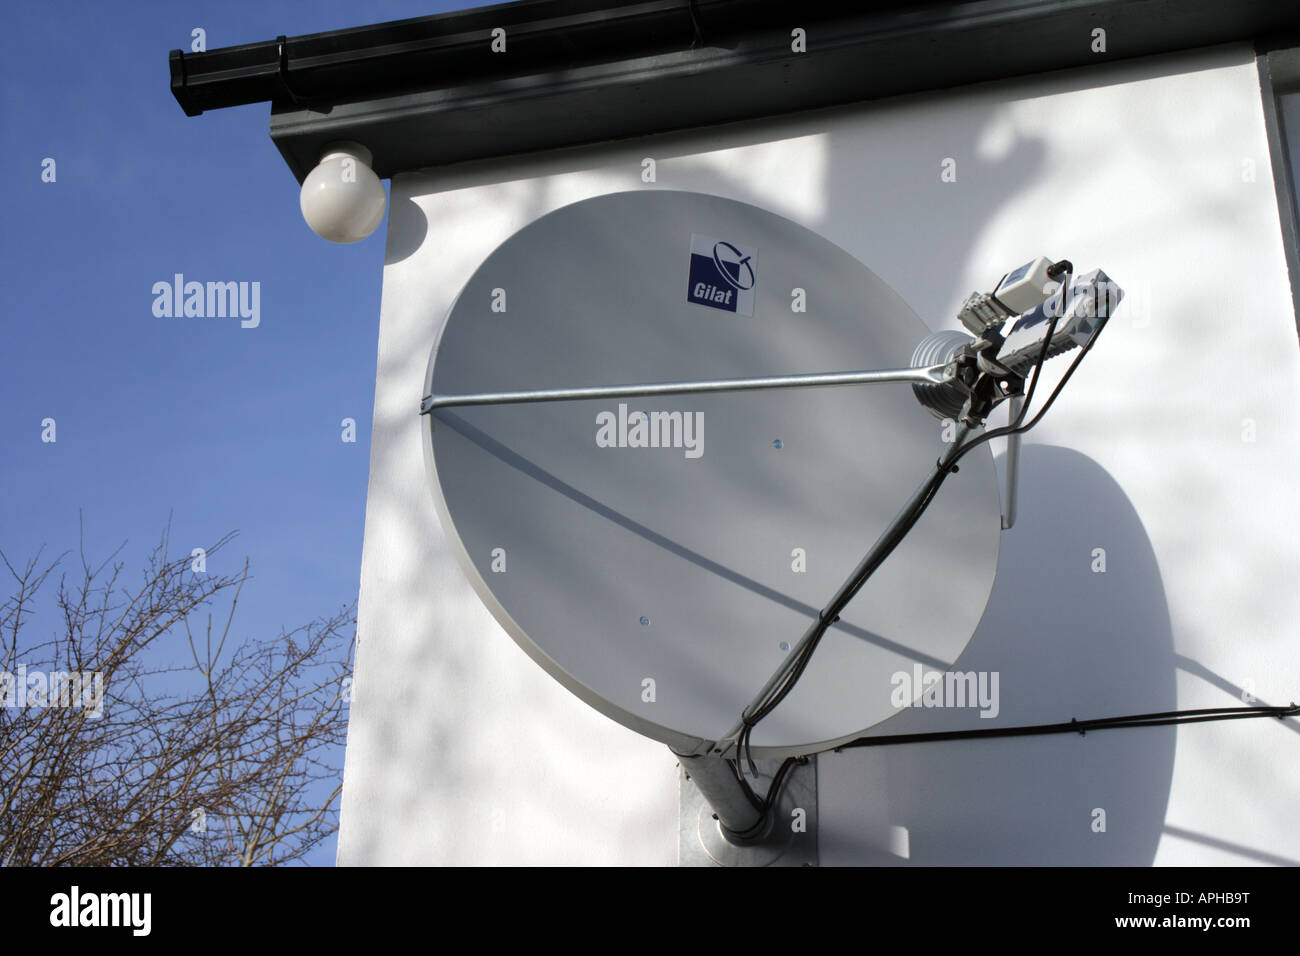 Digiweb Satellite Broadband dish bringing broadband to rural Ireland Stock Photo